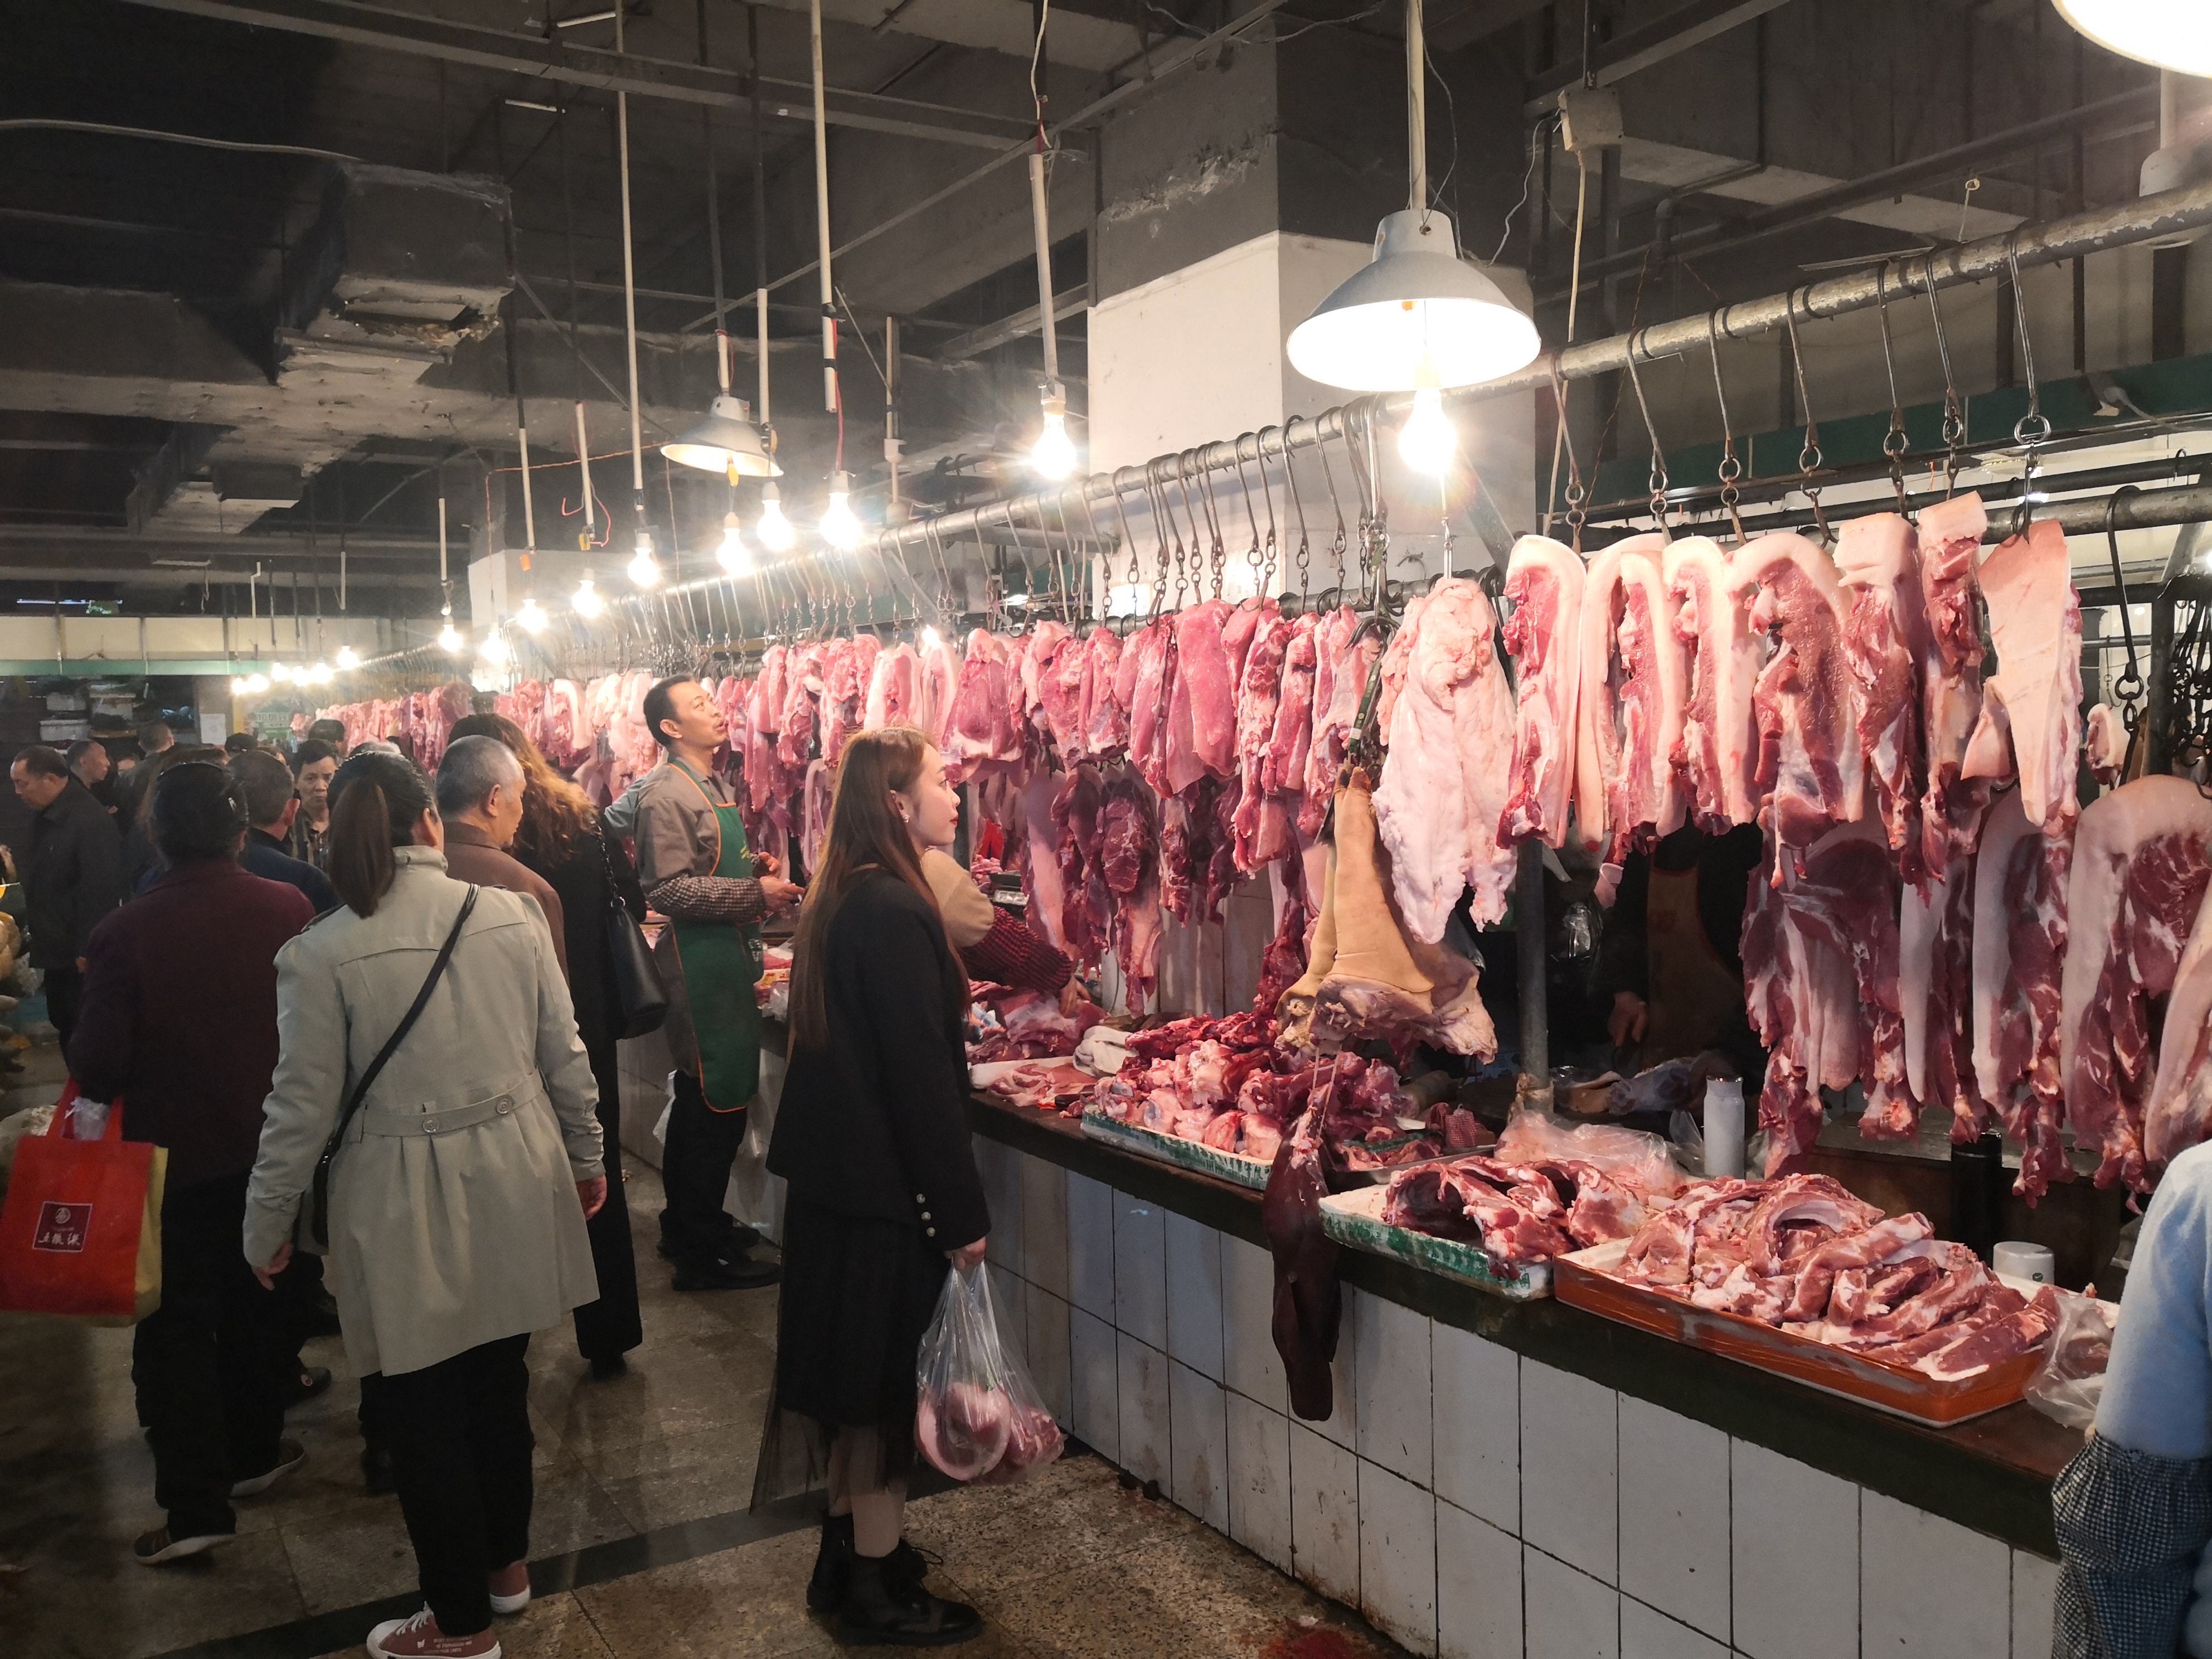 当天上午,在南门山新生菜市场,肉贩不断吆喝招揽生意,猪肉摊围了不少